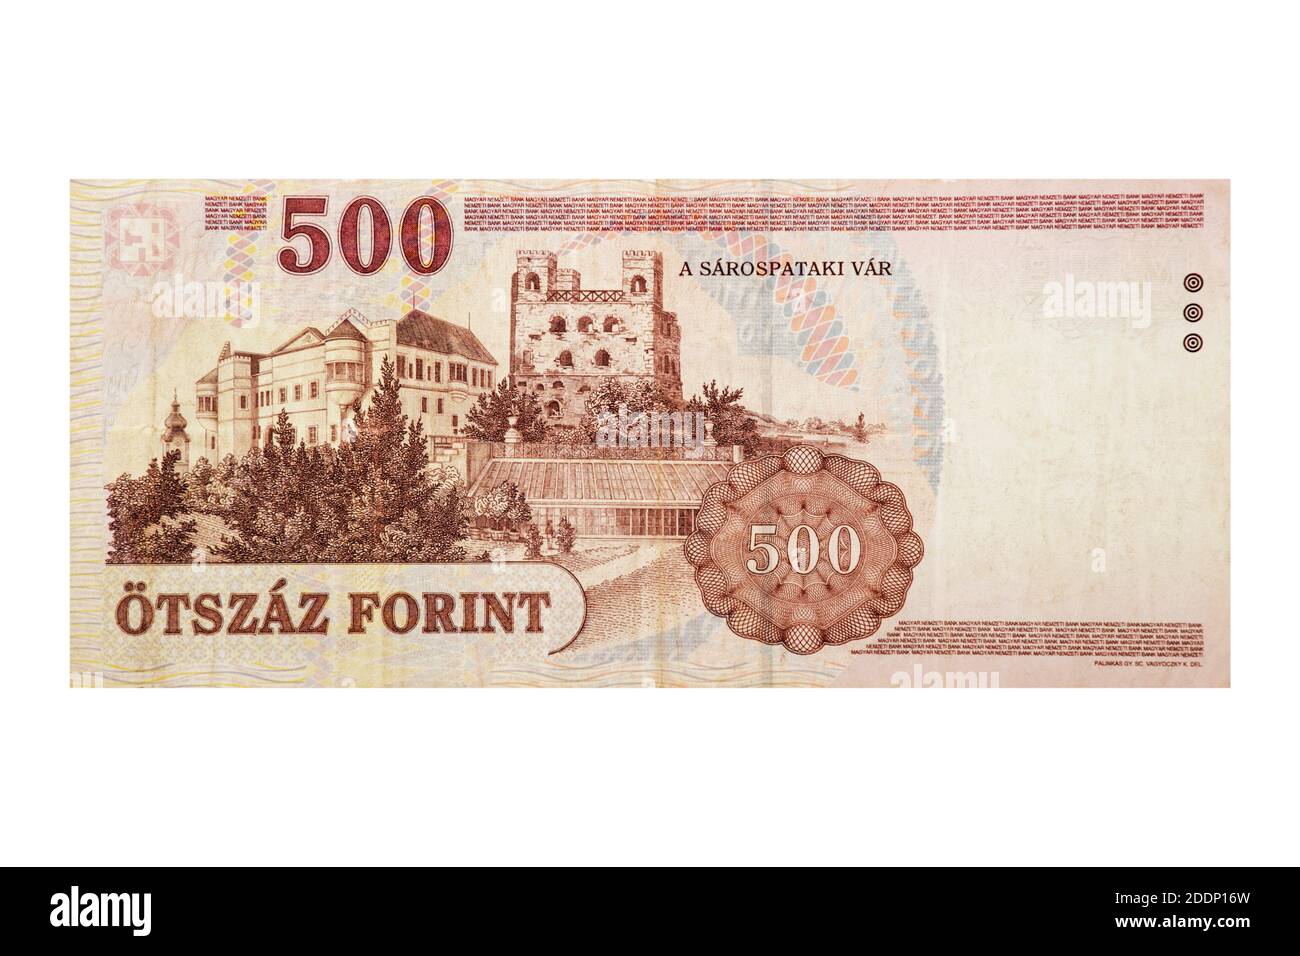 Vue inversée des billets hongrois de 500 forints isolés sur un arrière-plan blanc Banque D'Images